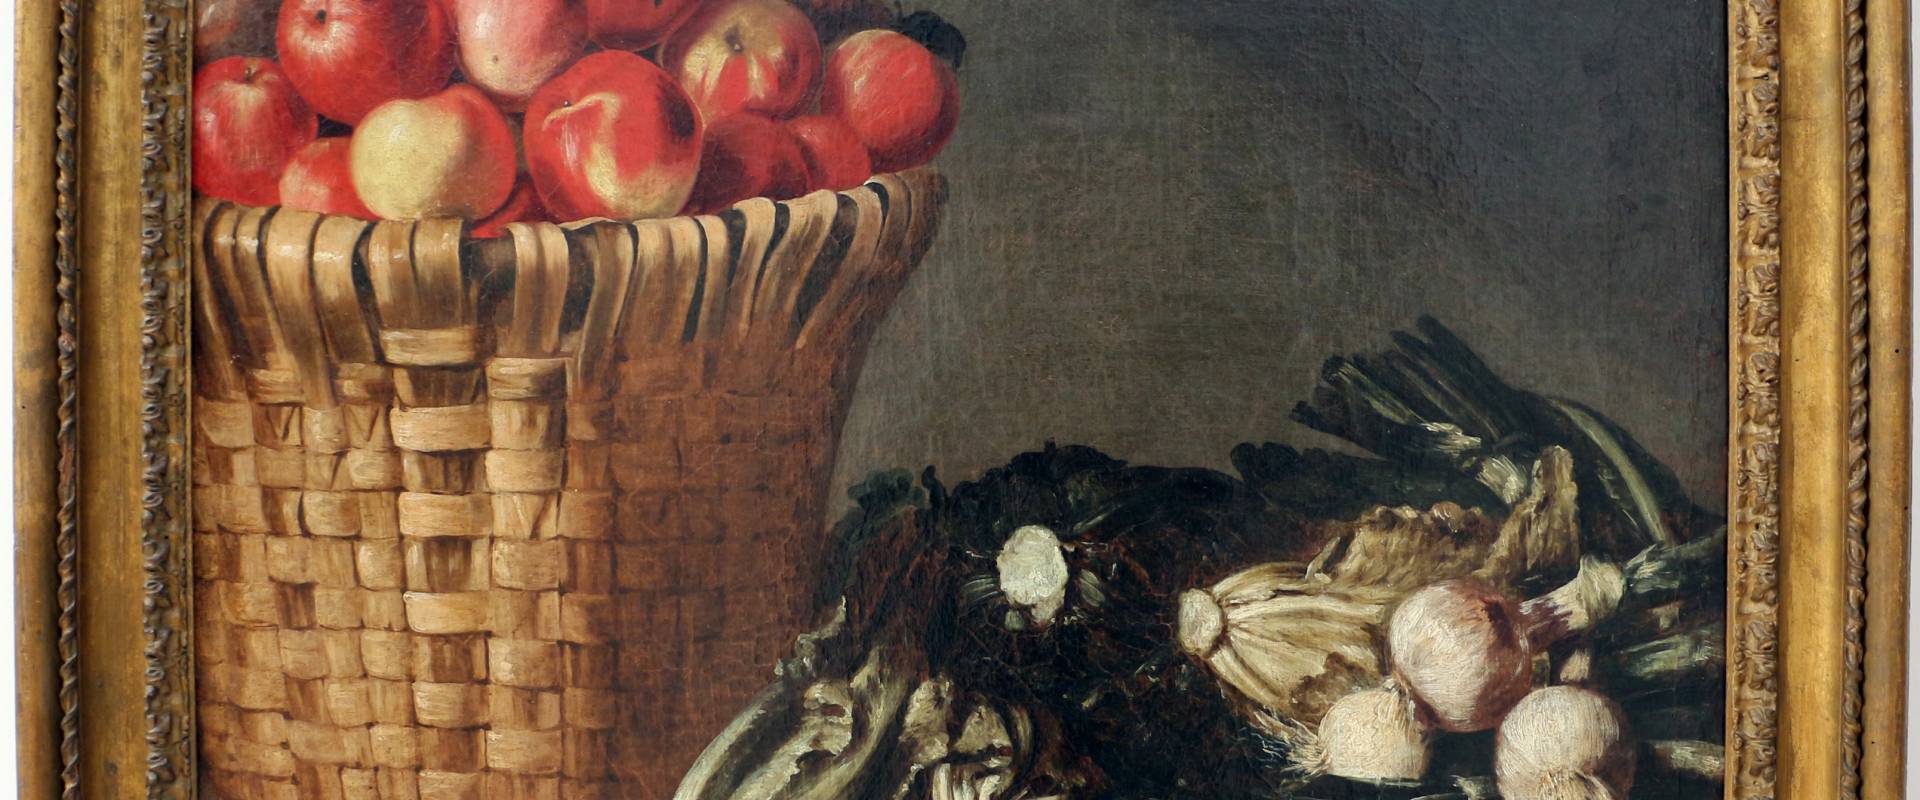 Pittore di rodolfo lodi, cesto di frutta e ortaggi, 1680 ca foto di Sailko